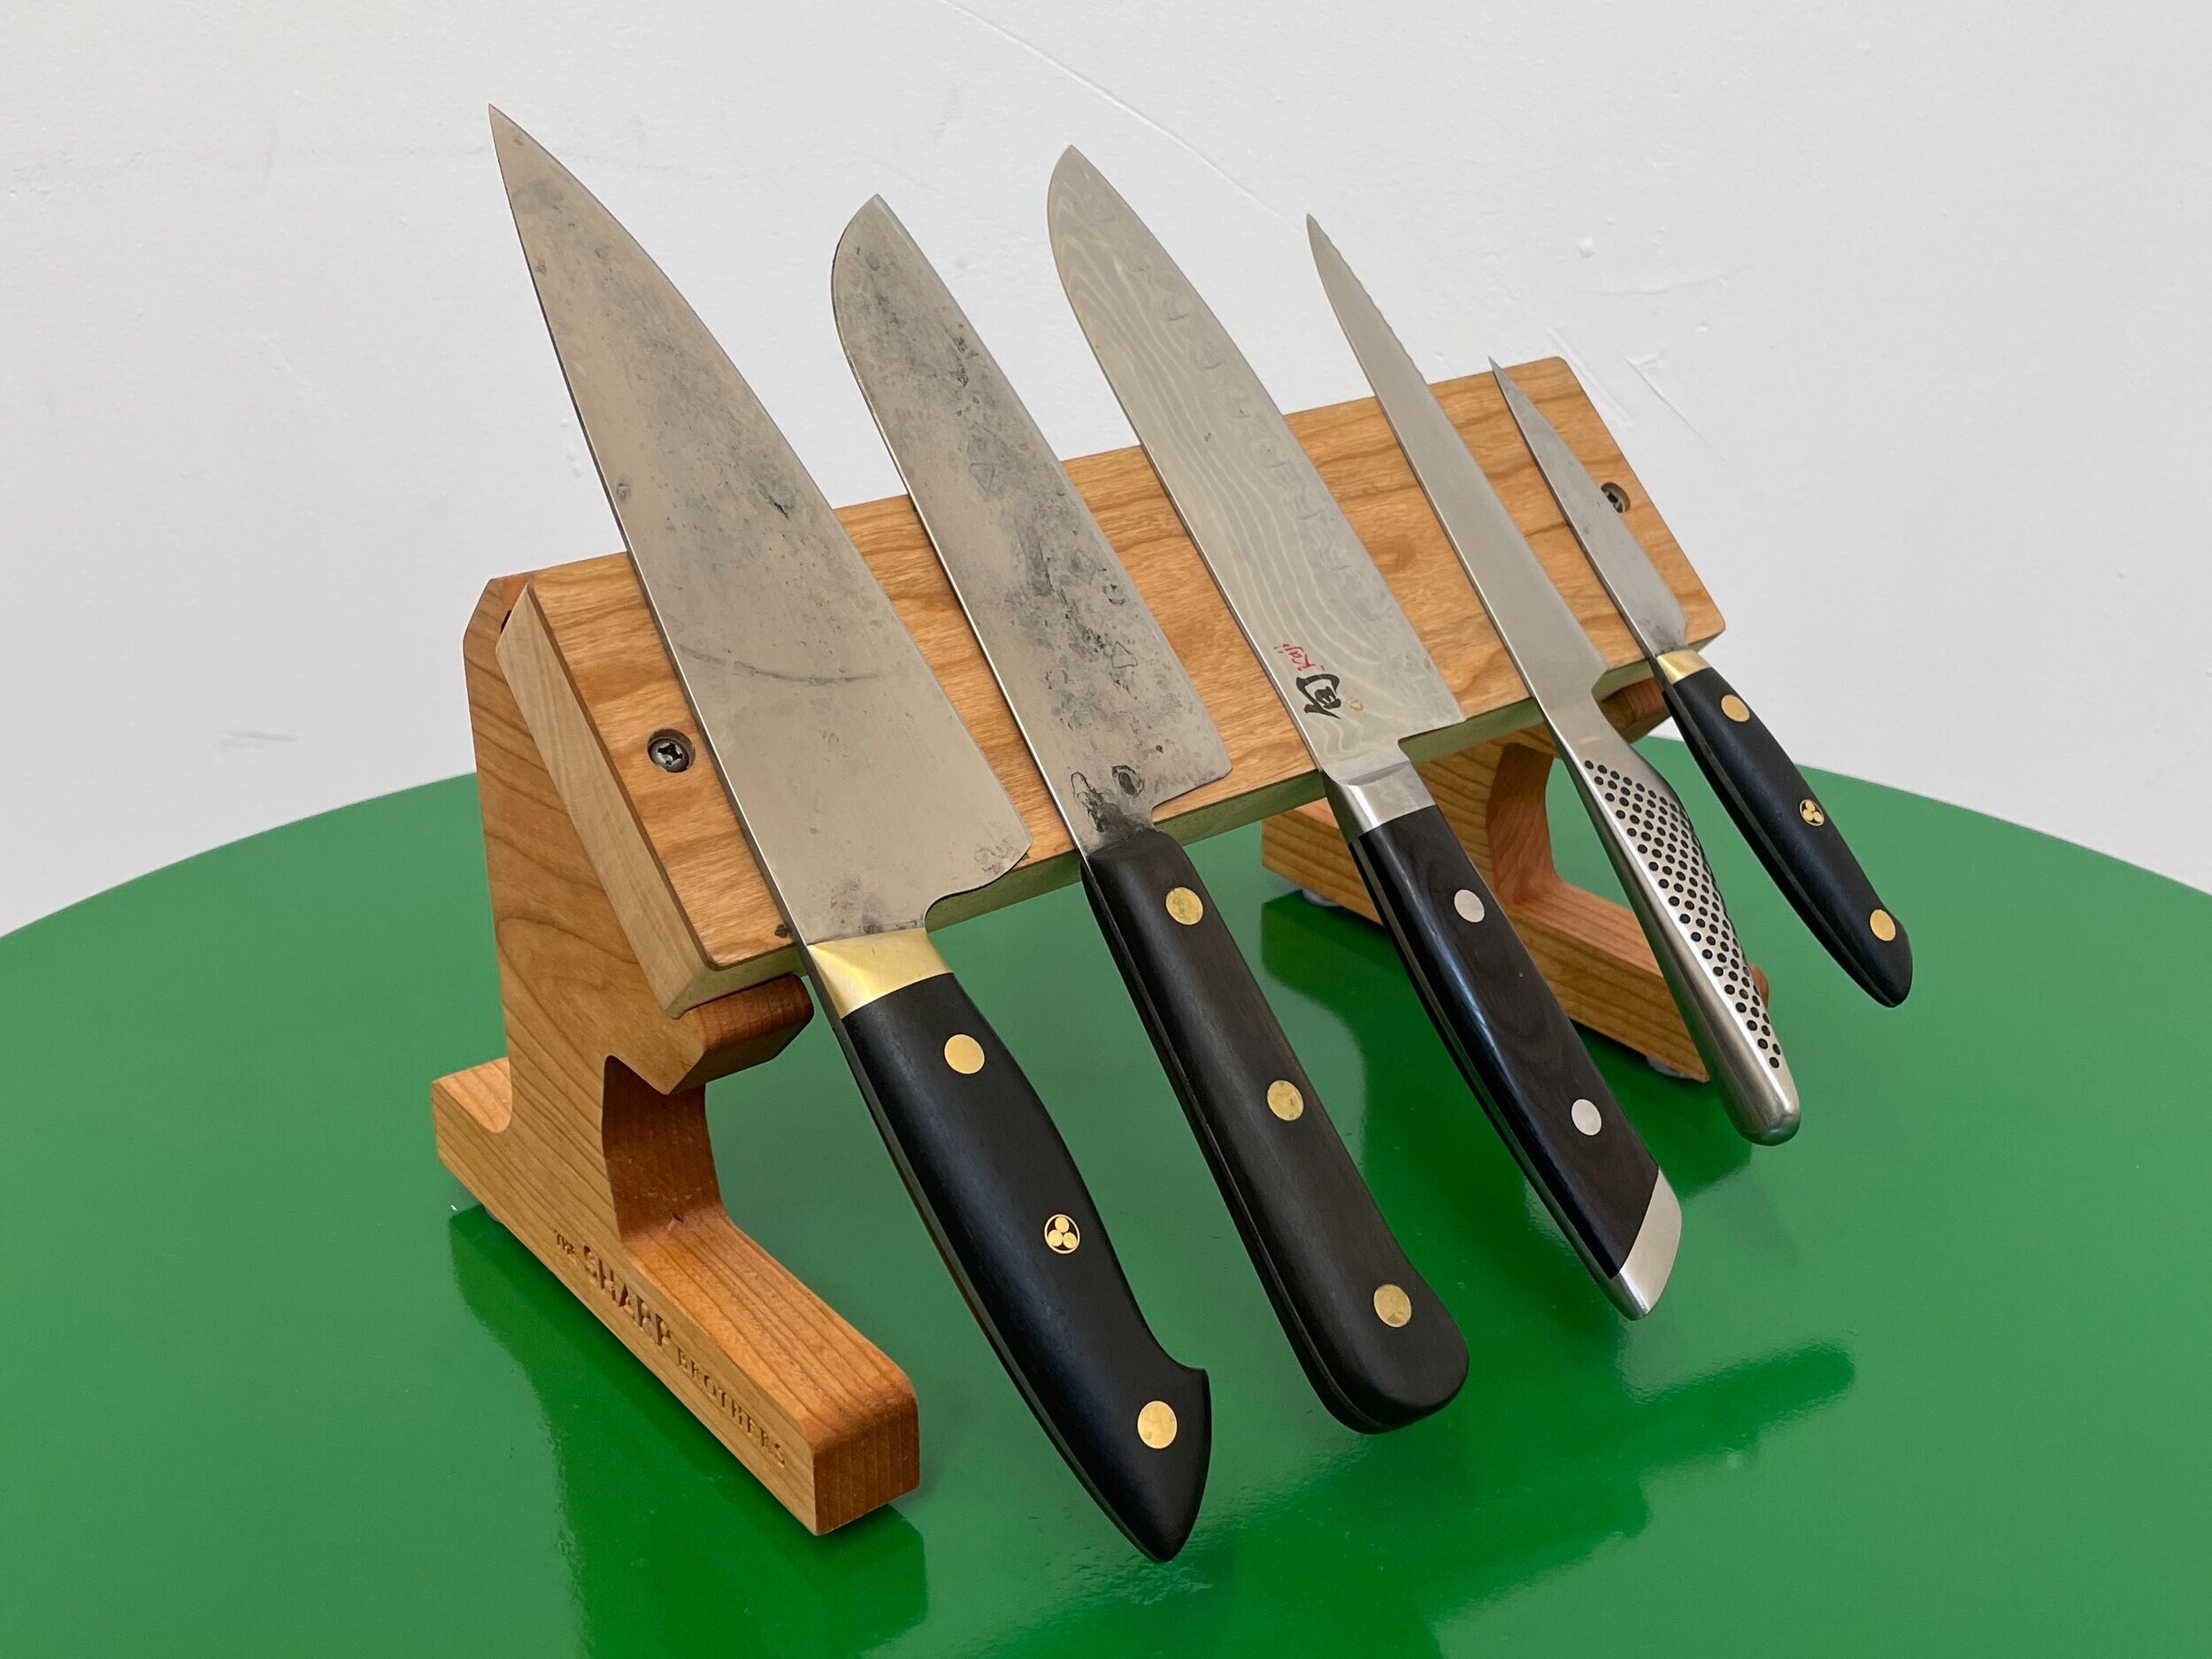 Retired Brush Prairie chef owns knife sharpening business